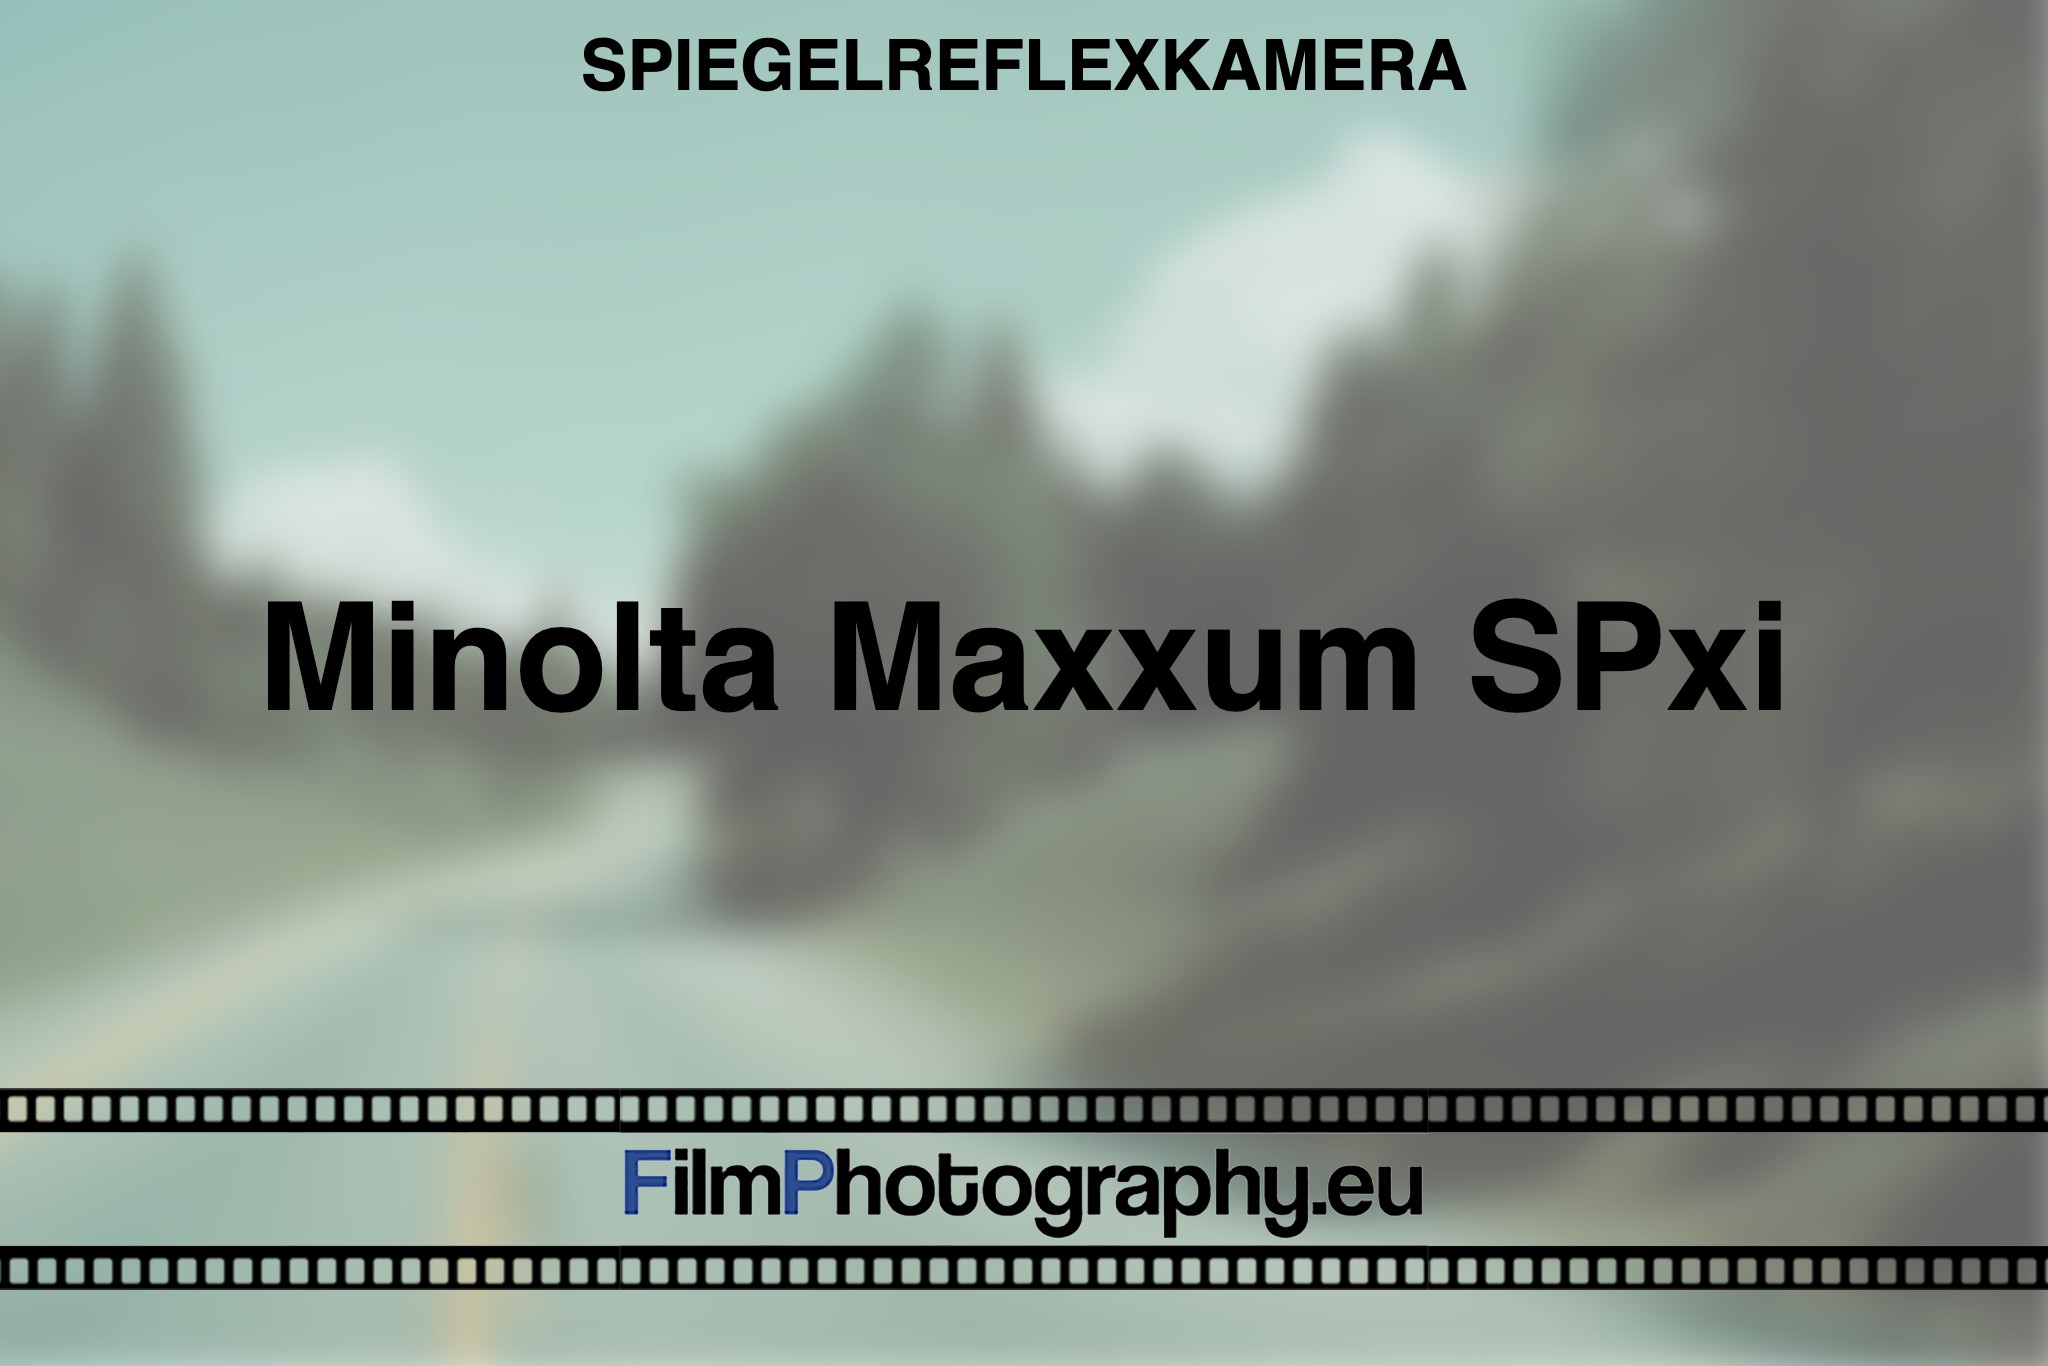 minolta-maxxum-spxi-spiegelreflexkamera-bnv